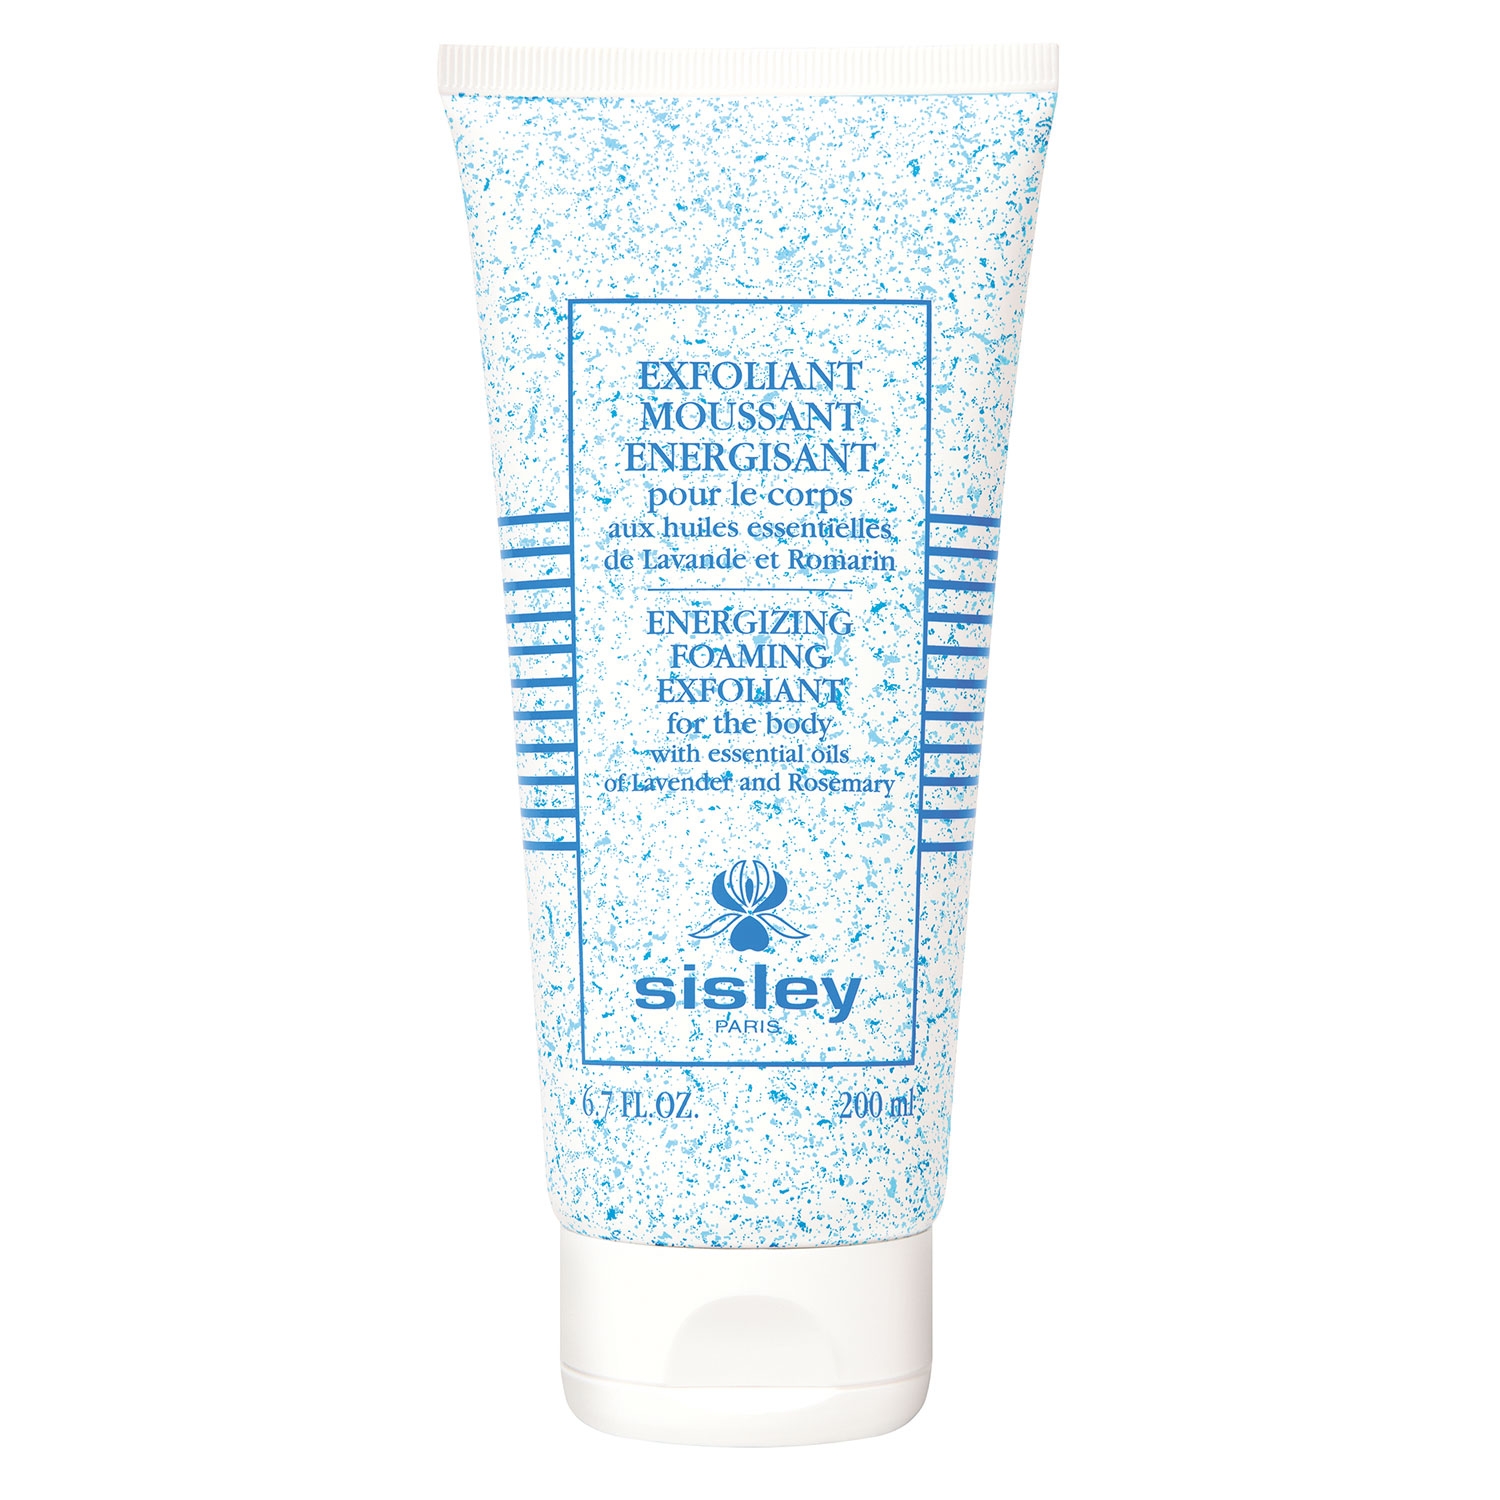 Produktbild von Sisley Skincare - Exfoliant Moussant Energisant pour le corps